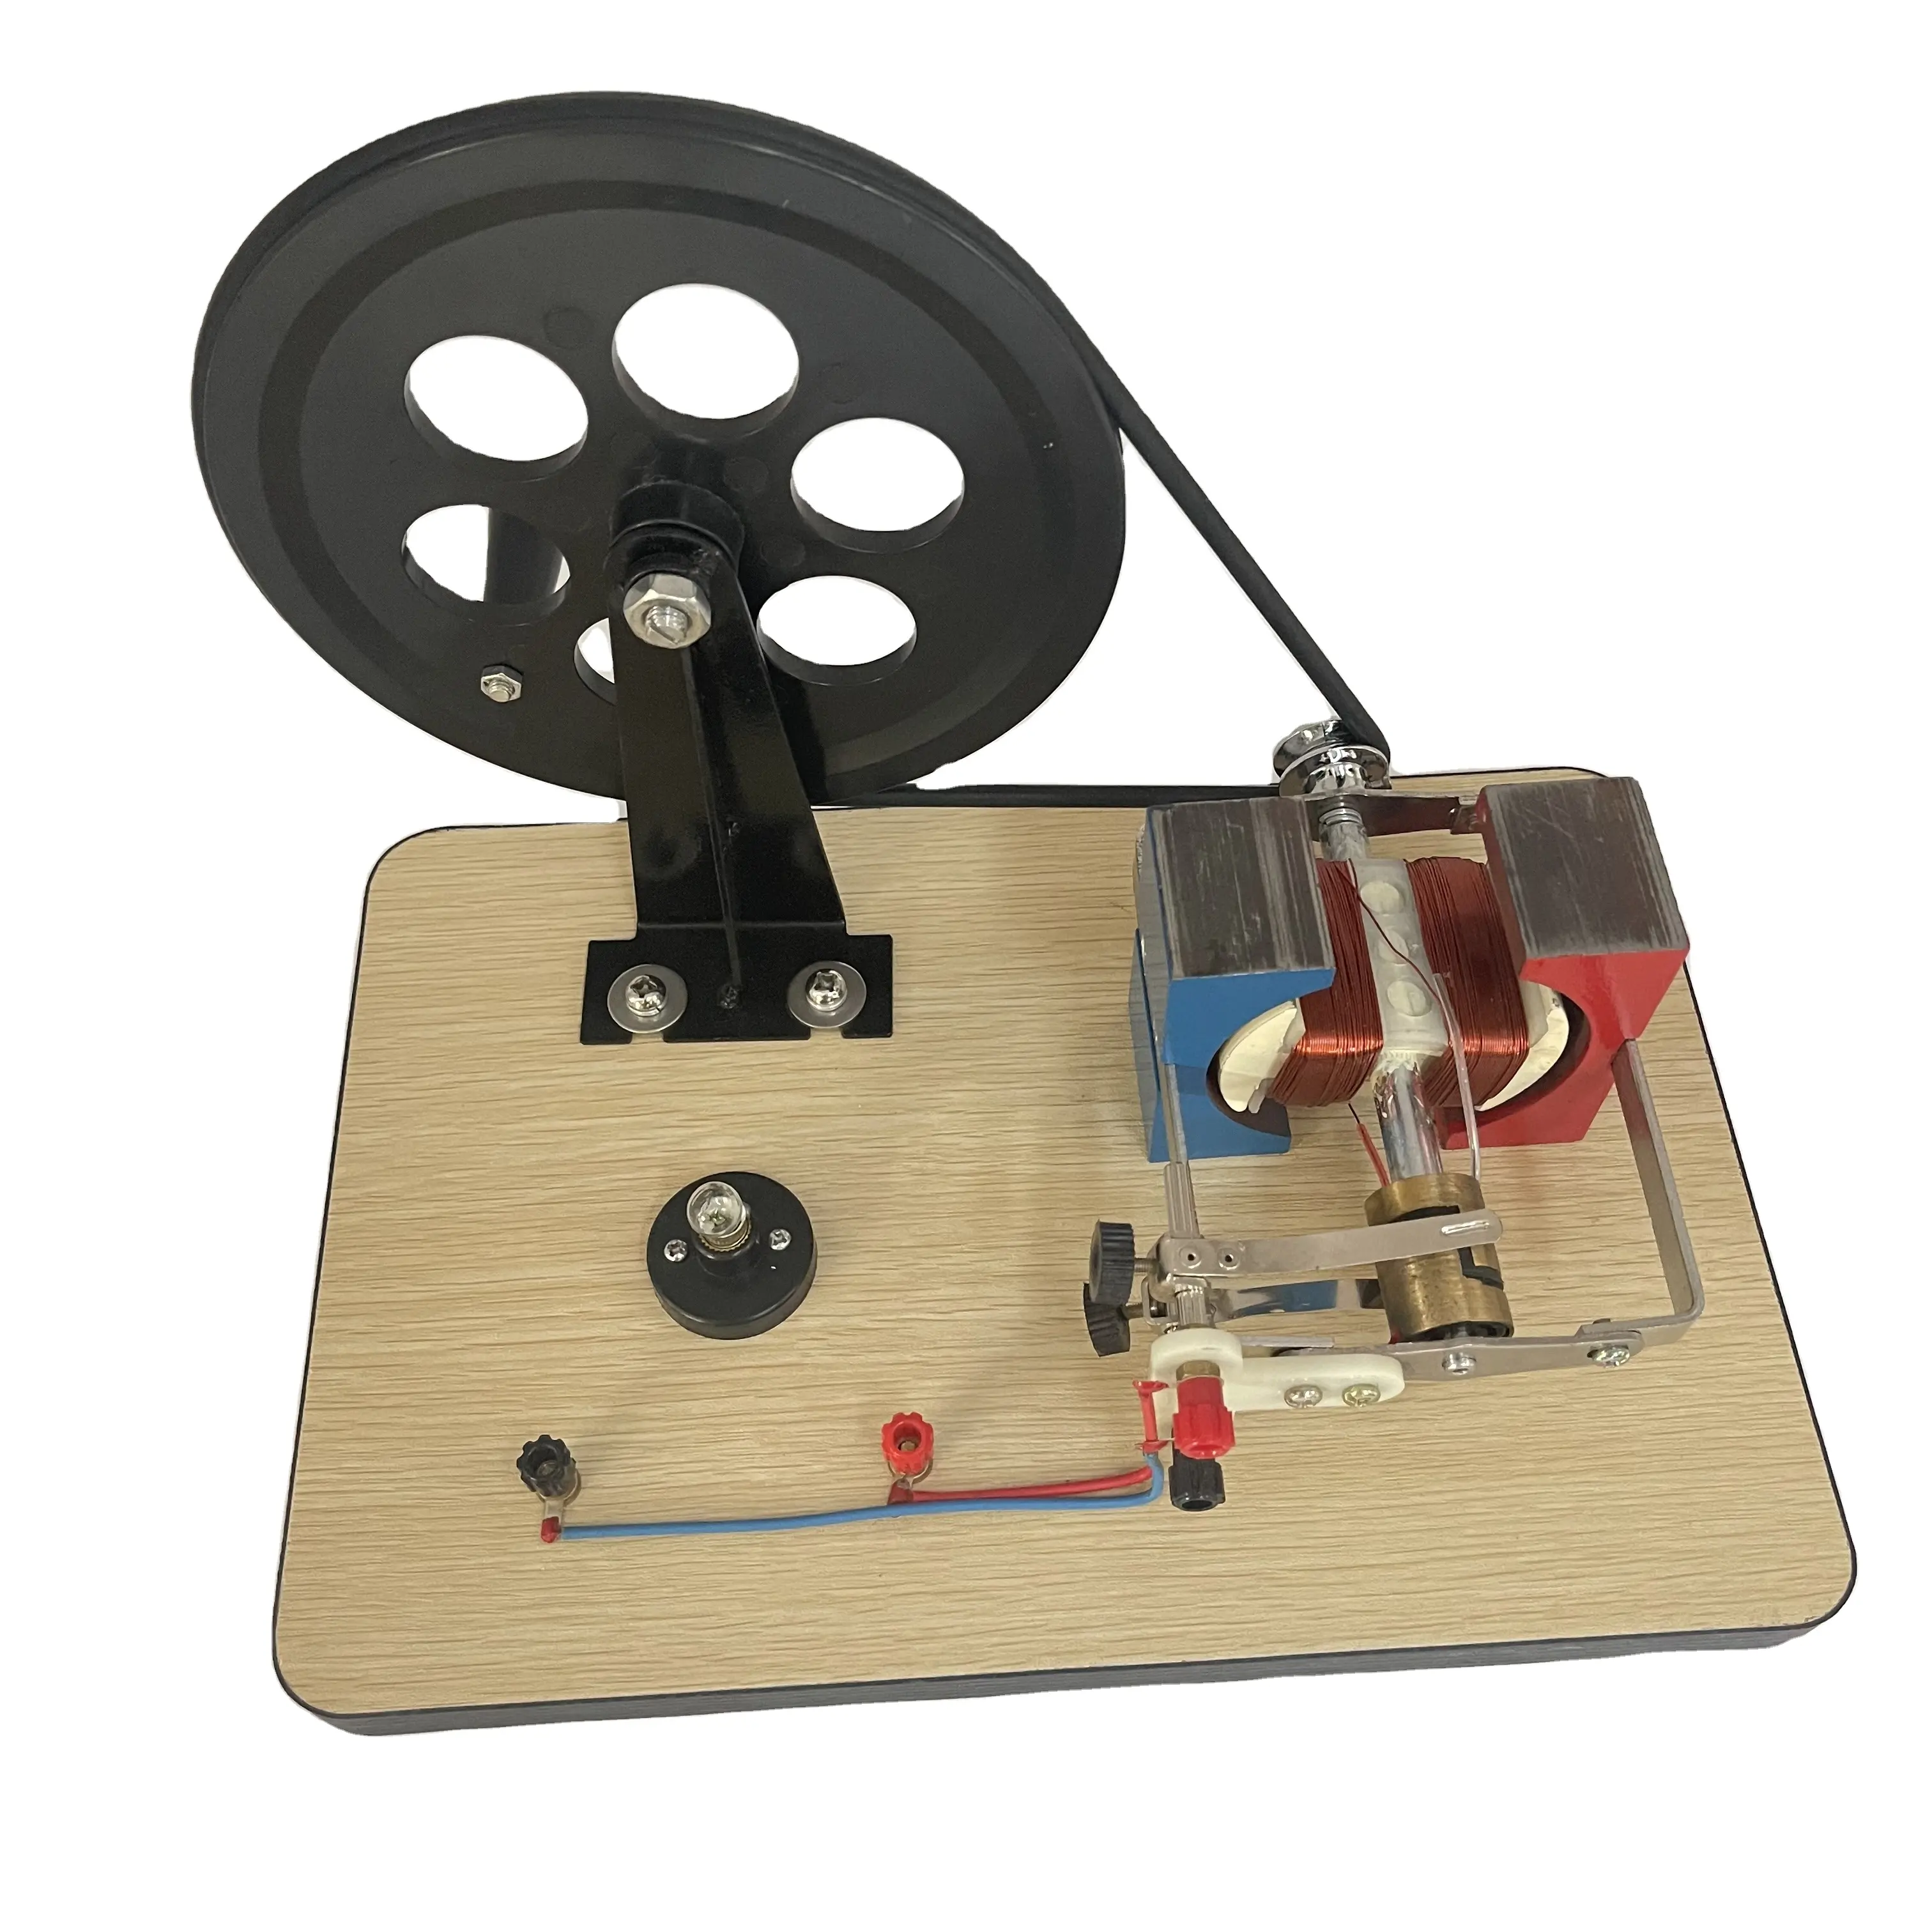 Generador de mano de tipo estándar 0417, generador de mano, demostración de experimentos, generador físico de CA/CC para estudiantes